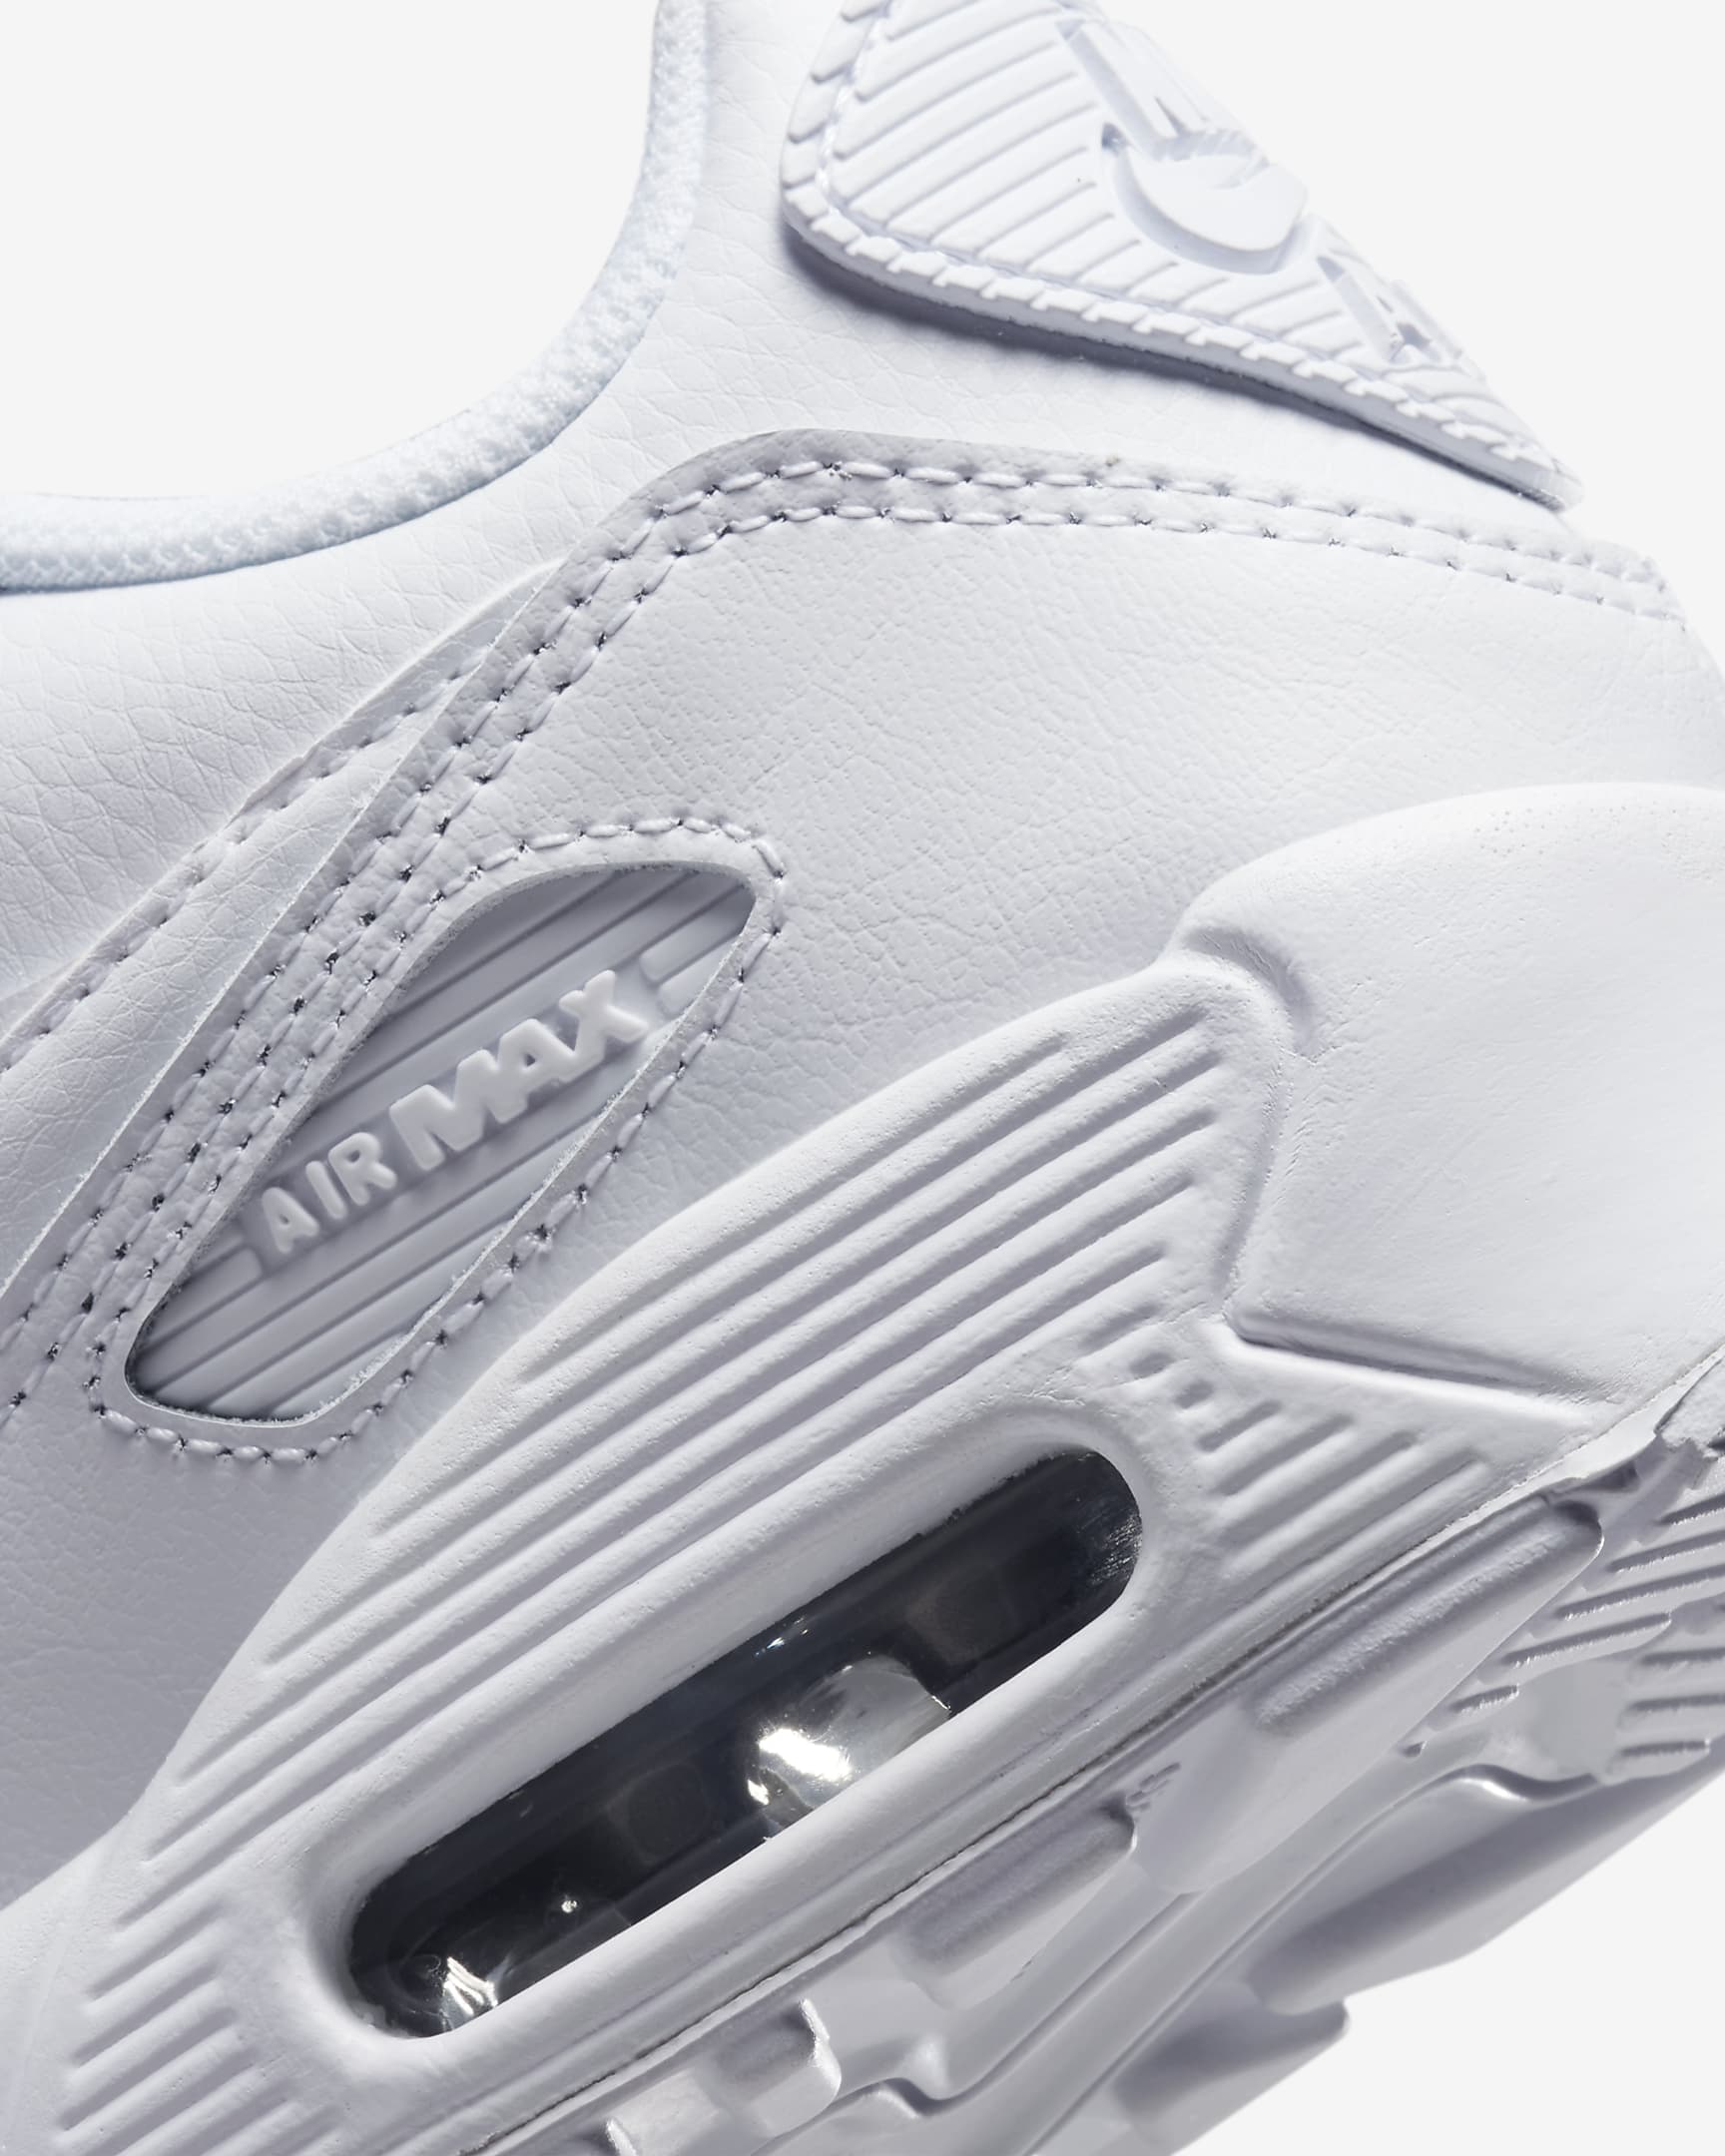 Nike Air Max 90 LTR Schuh für ältere Kinder - Weiß/Metallic Silver/Weiß/Weiß